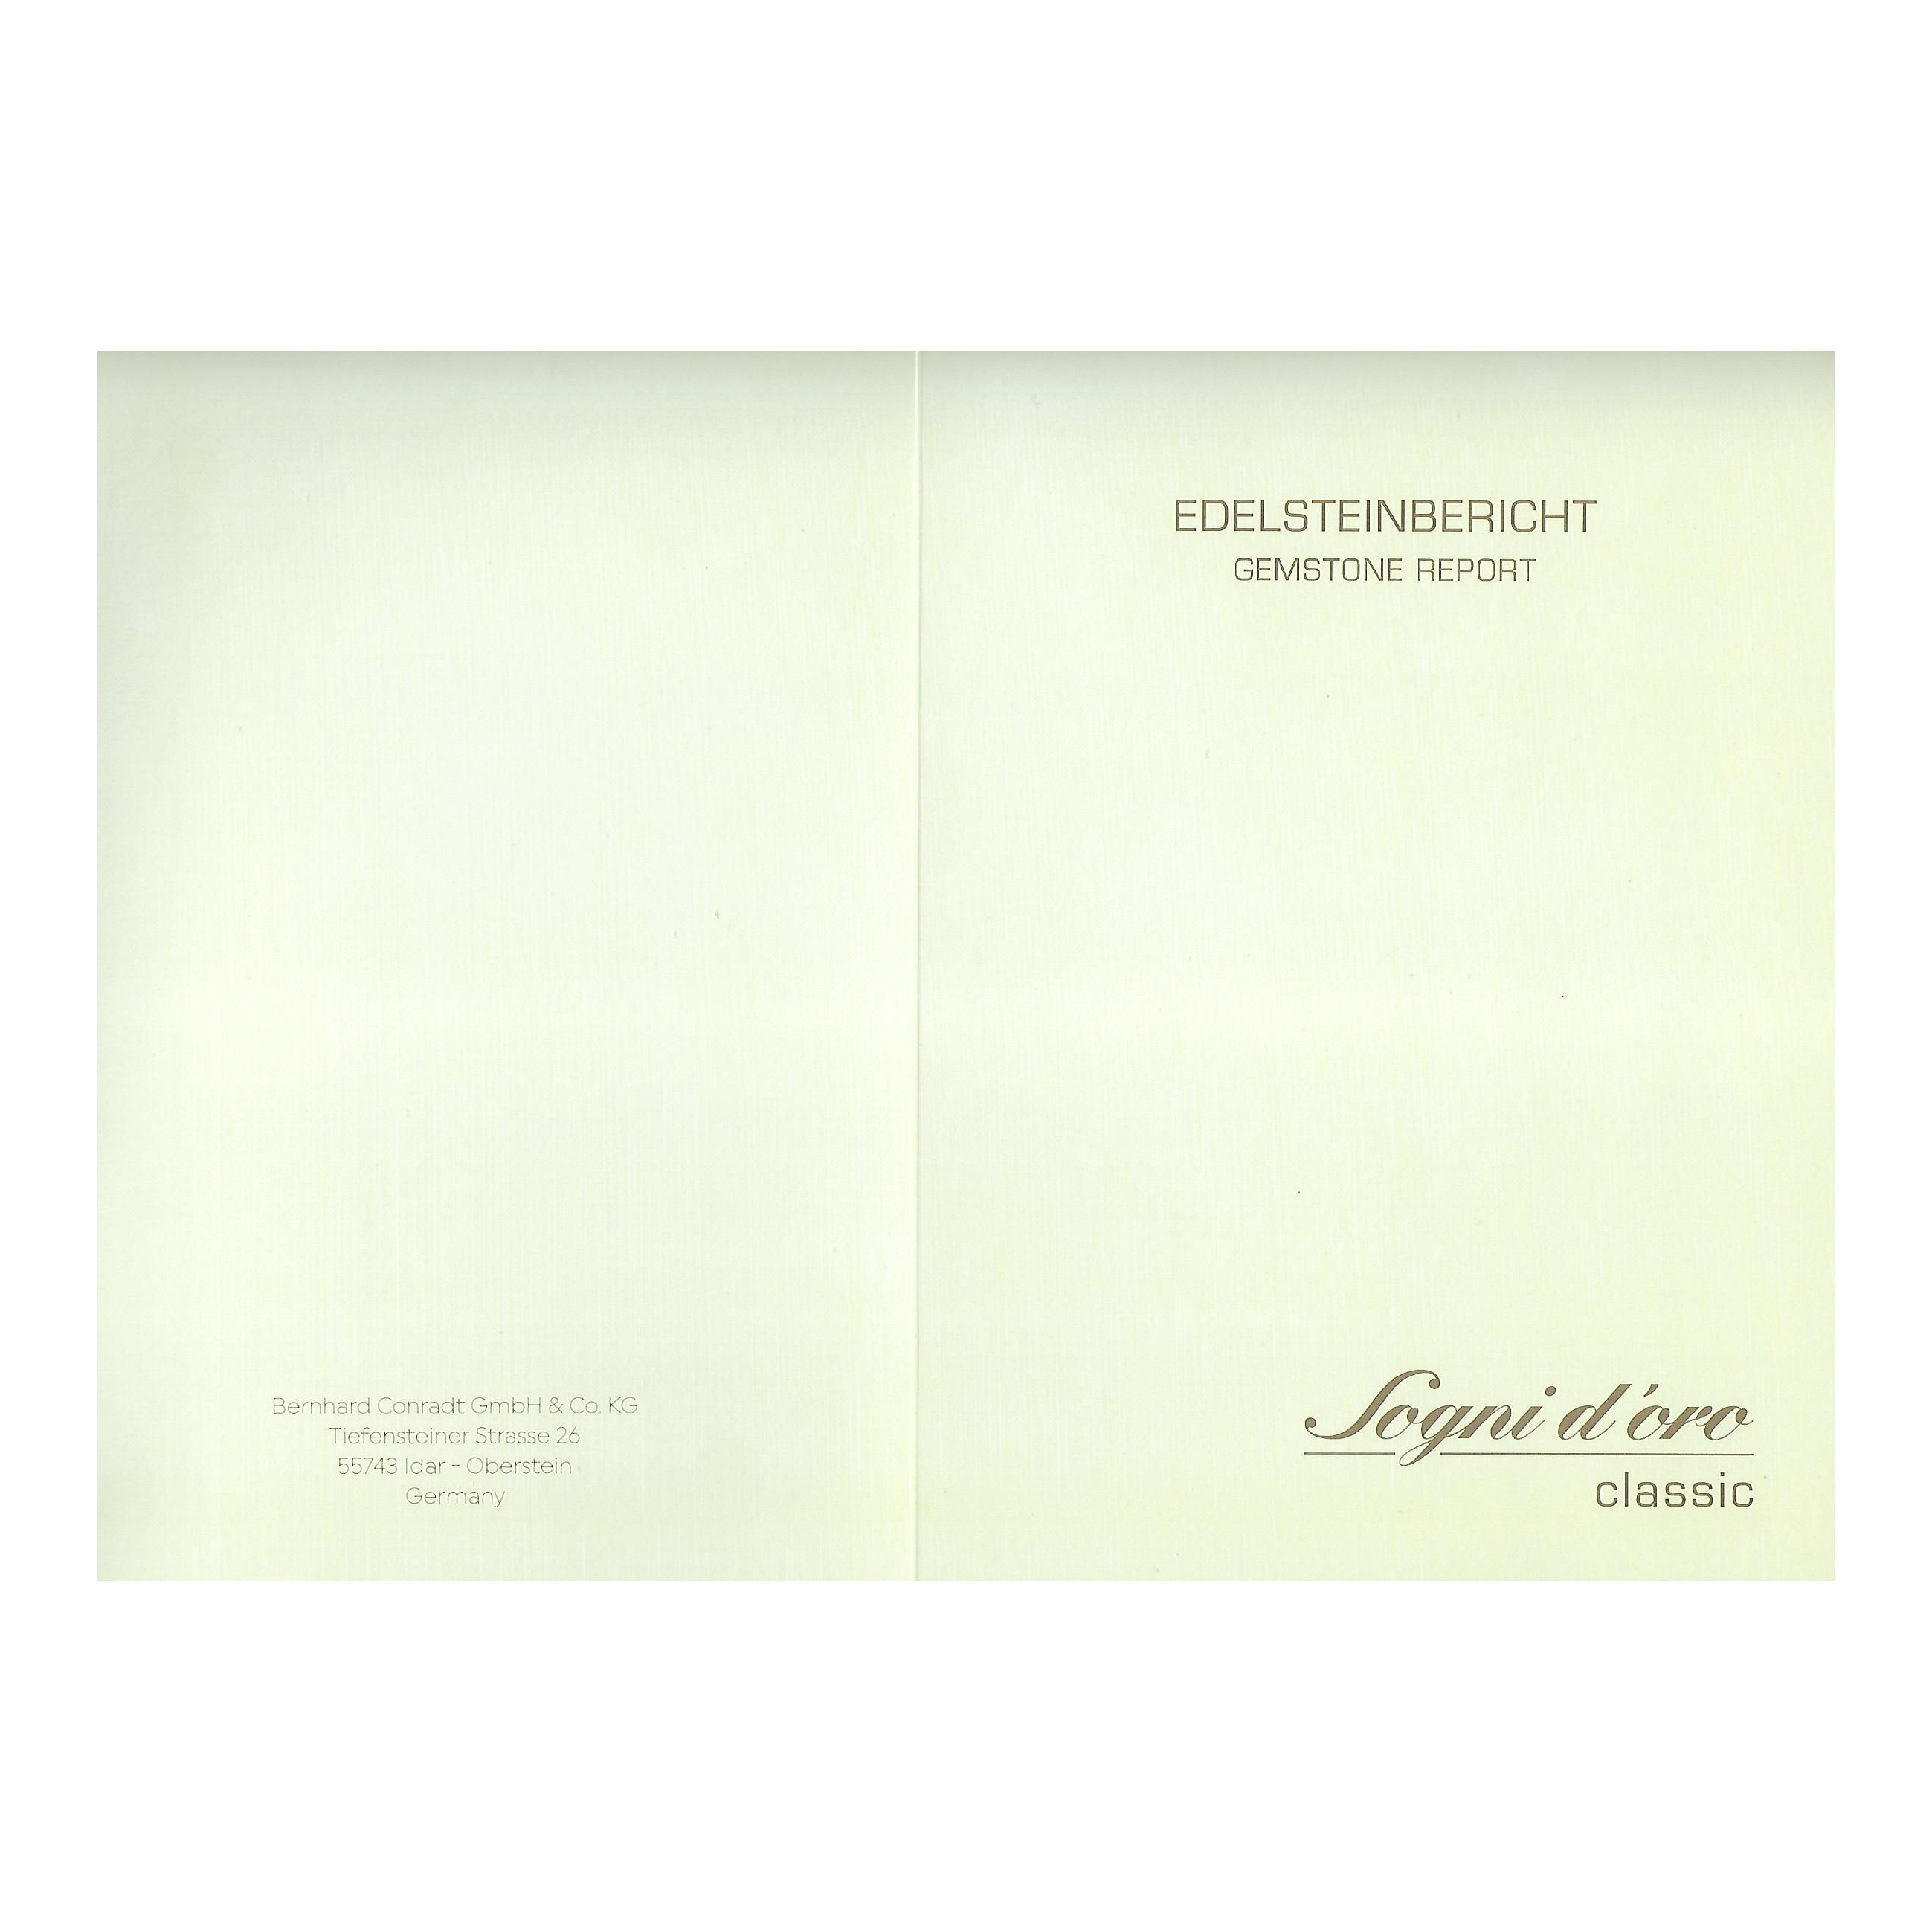 Rohdiamant schwarz Gelbgold 585/000, Edelstein Collier mit Karabinerverschluss, ca. 122 ct. , Sogni d'oro 